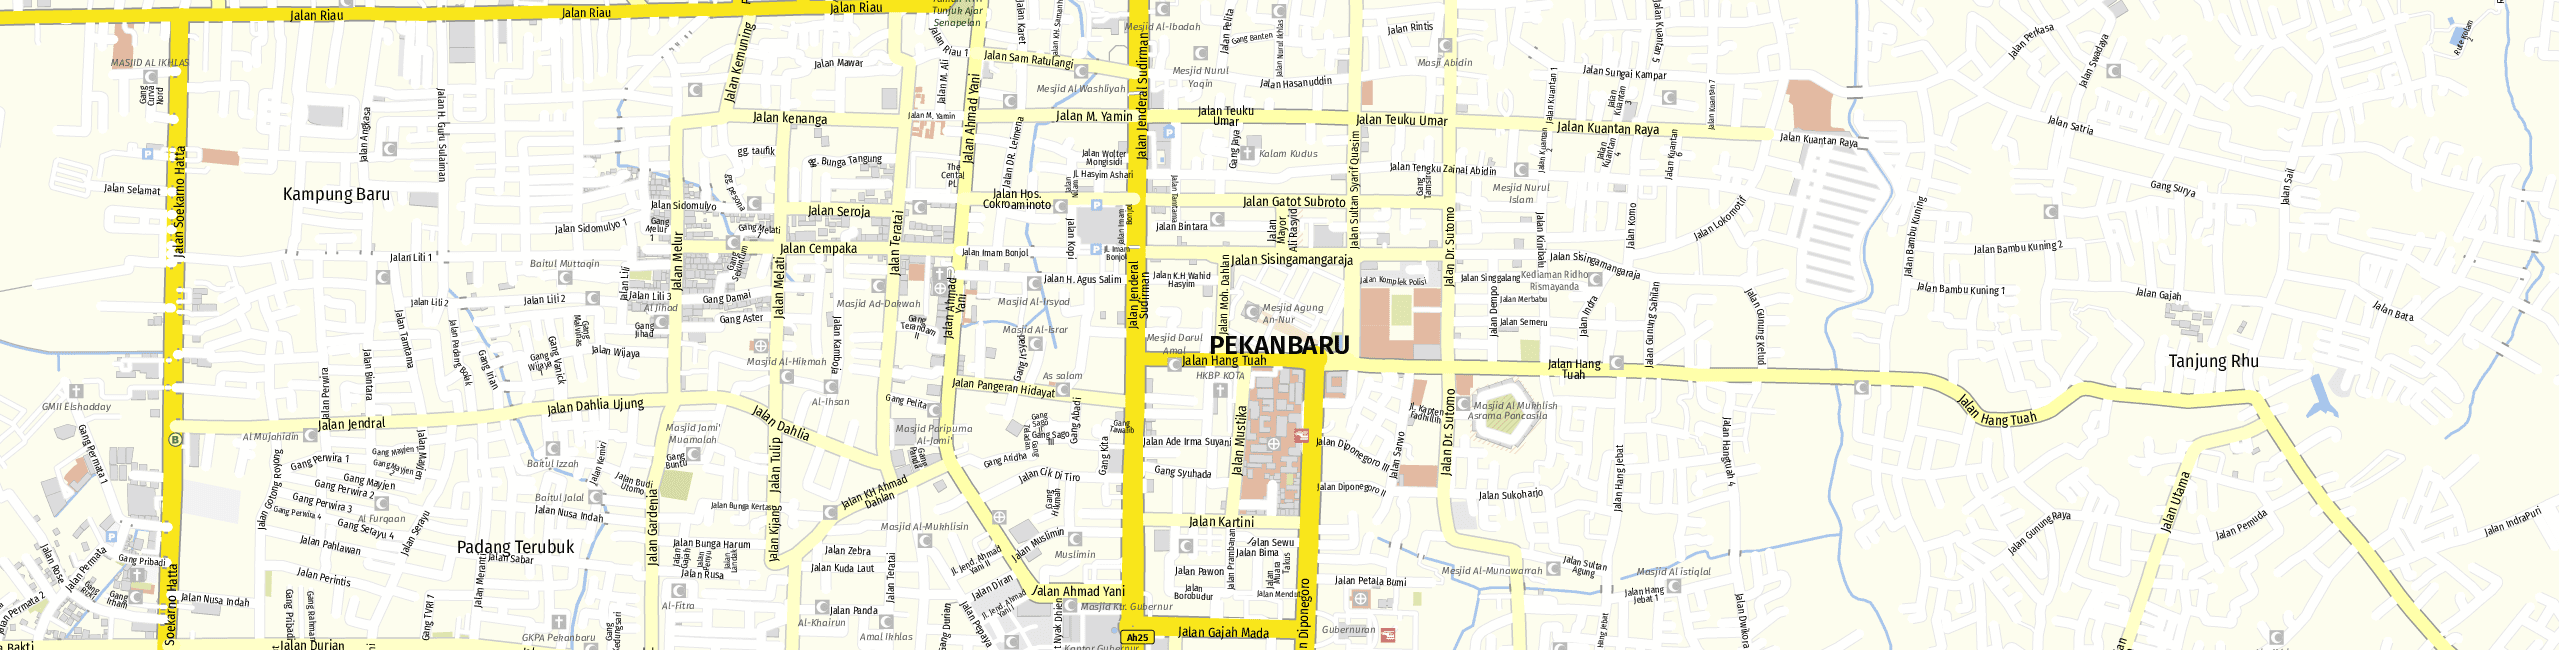 Stadtplan Pekanbaru zum Downloaden.